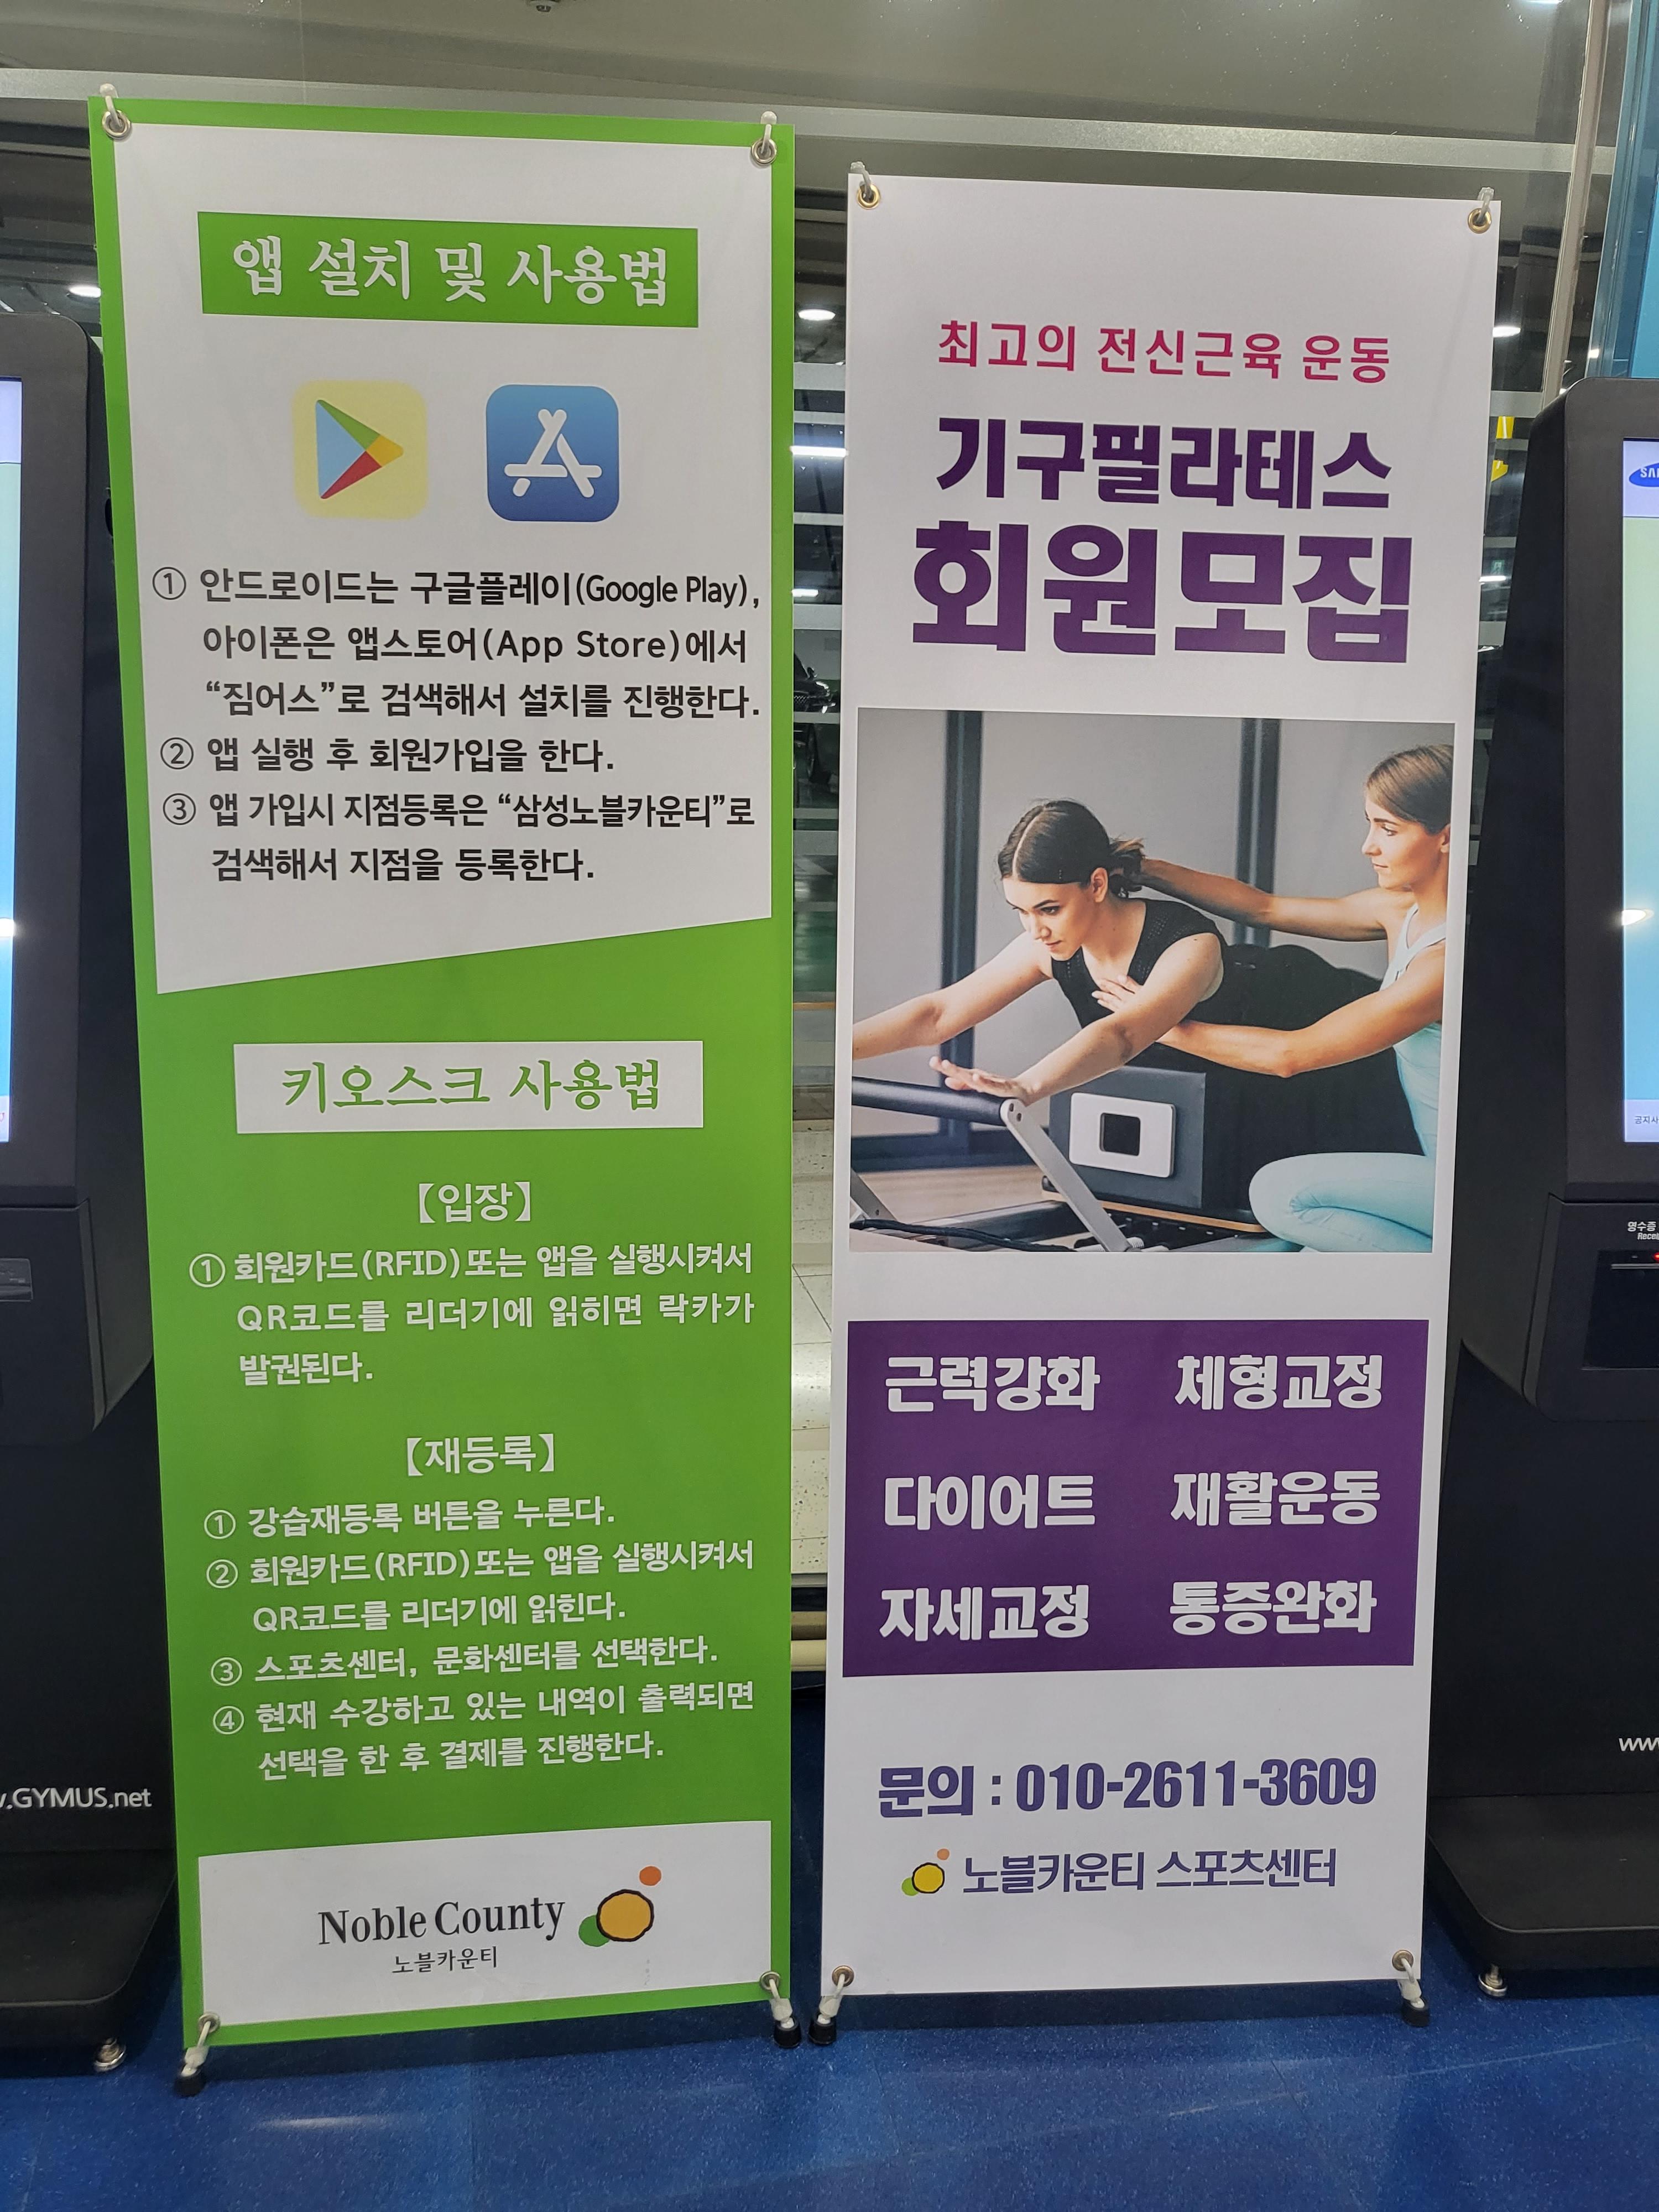 삼성 노블카운티 스포츠센터 기구필라테스 회원모집